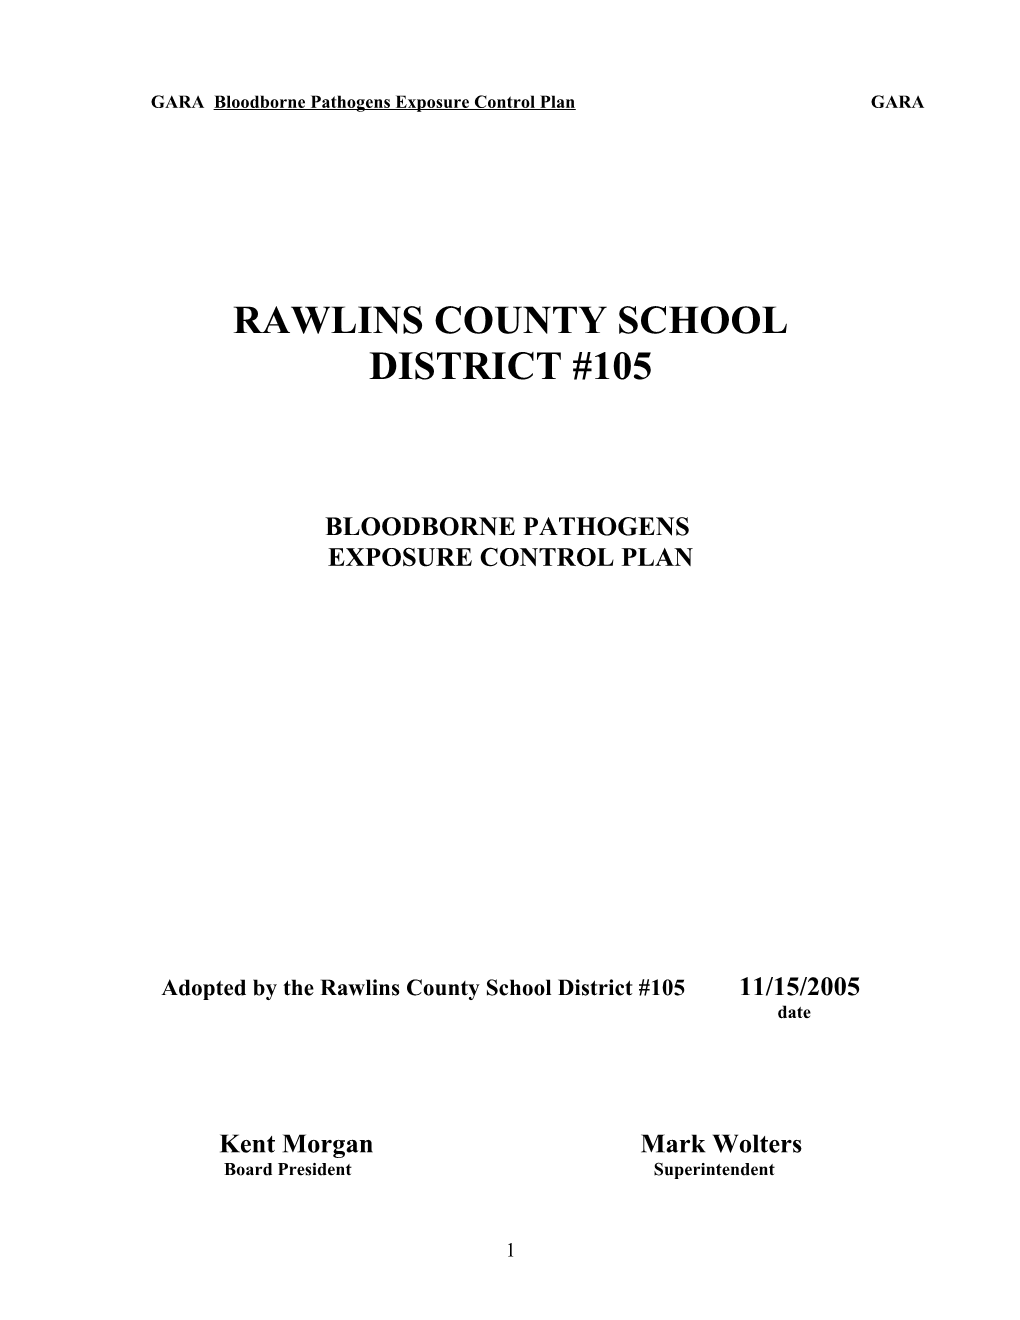 Rawlins County School District #105